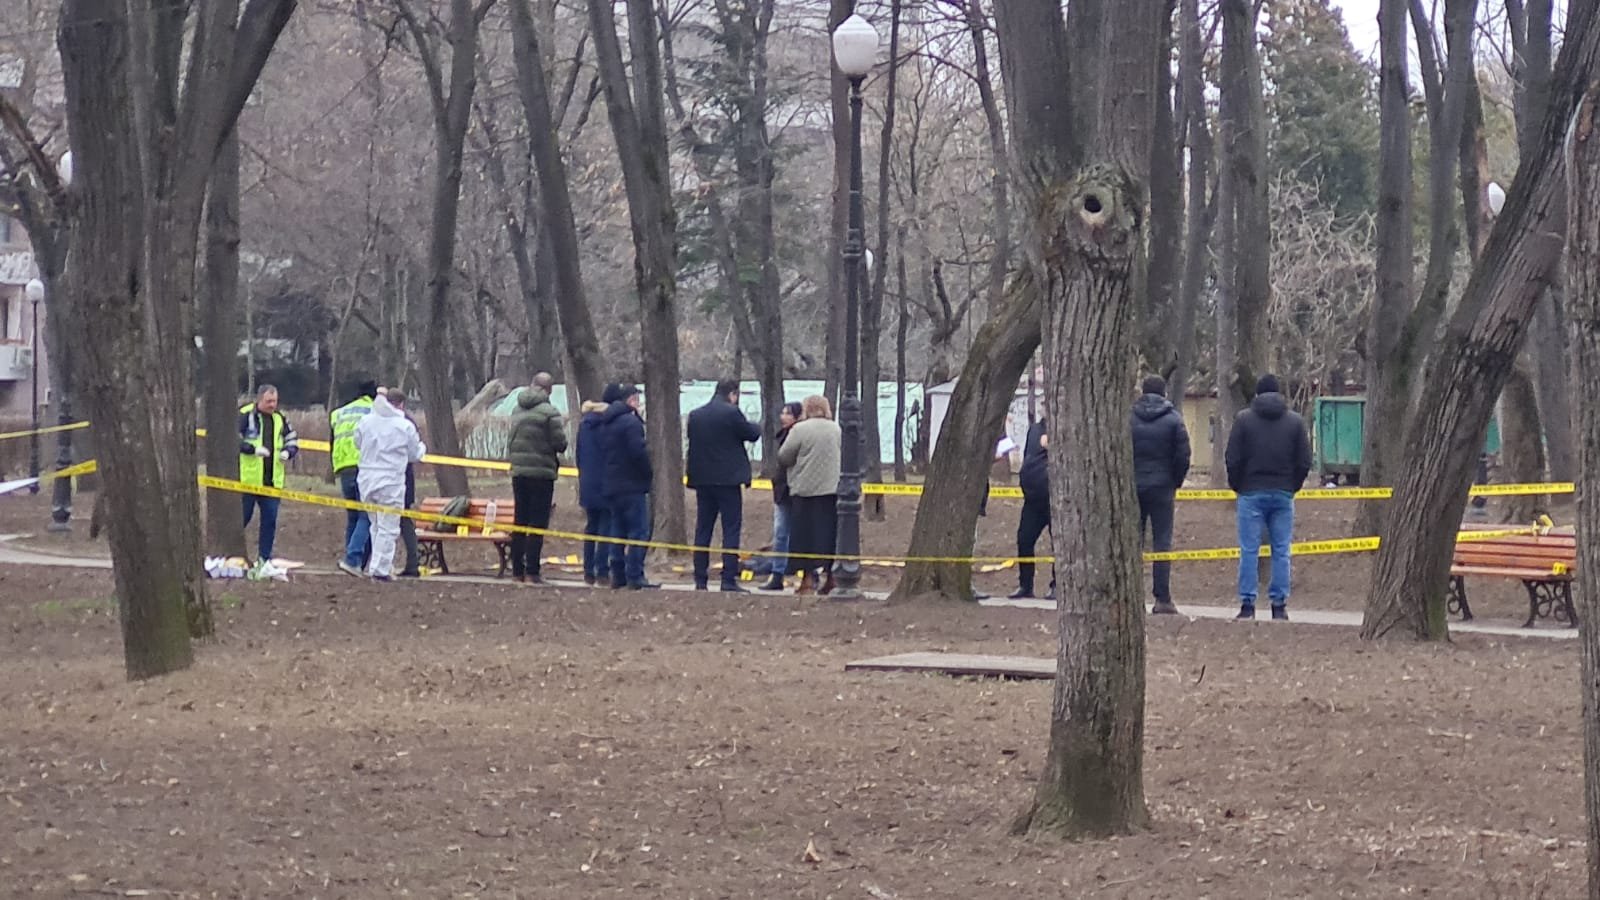  Poliţistul găsit mort în parcul Copou s-ar fi sinucis din dragoste. El a venit din Botoşani cu maşina de poliţie